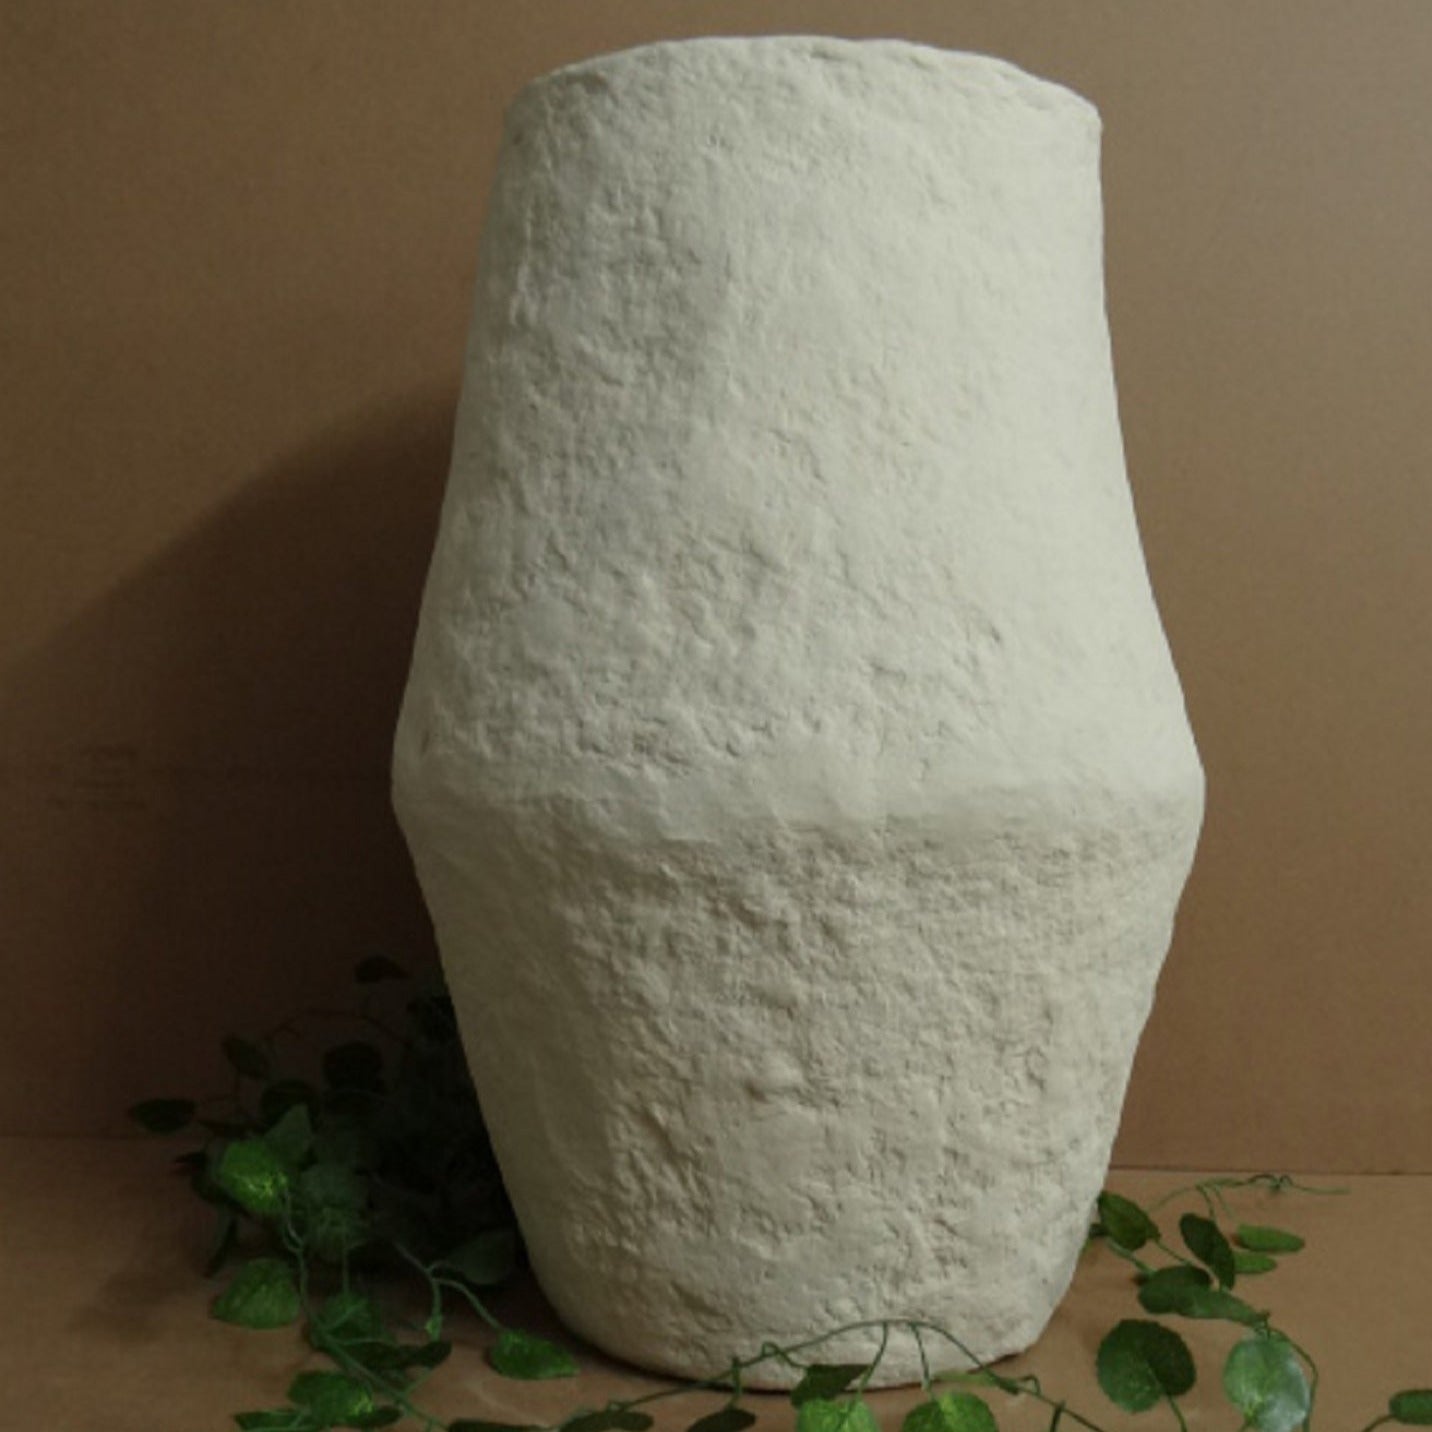 Denton Vase